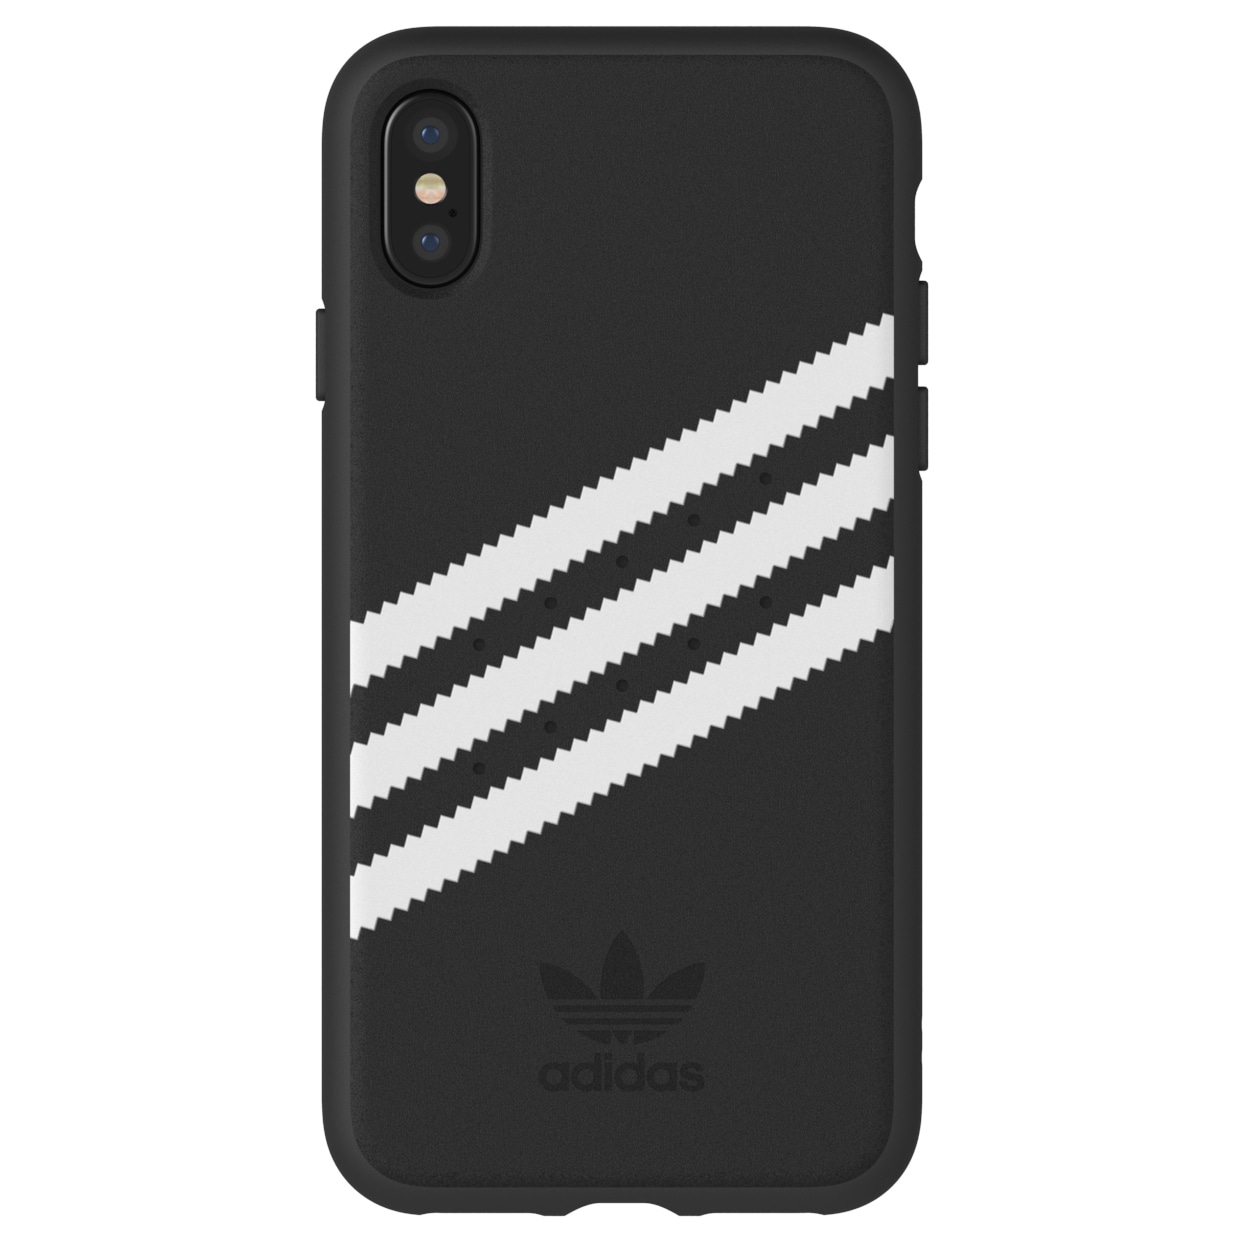 Adidas iPhone X cover (sort/hvid) | Elgiganten